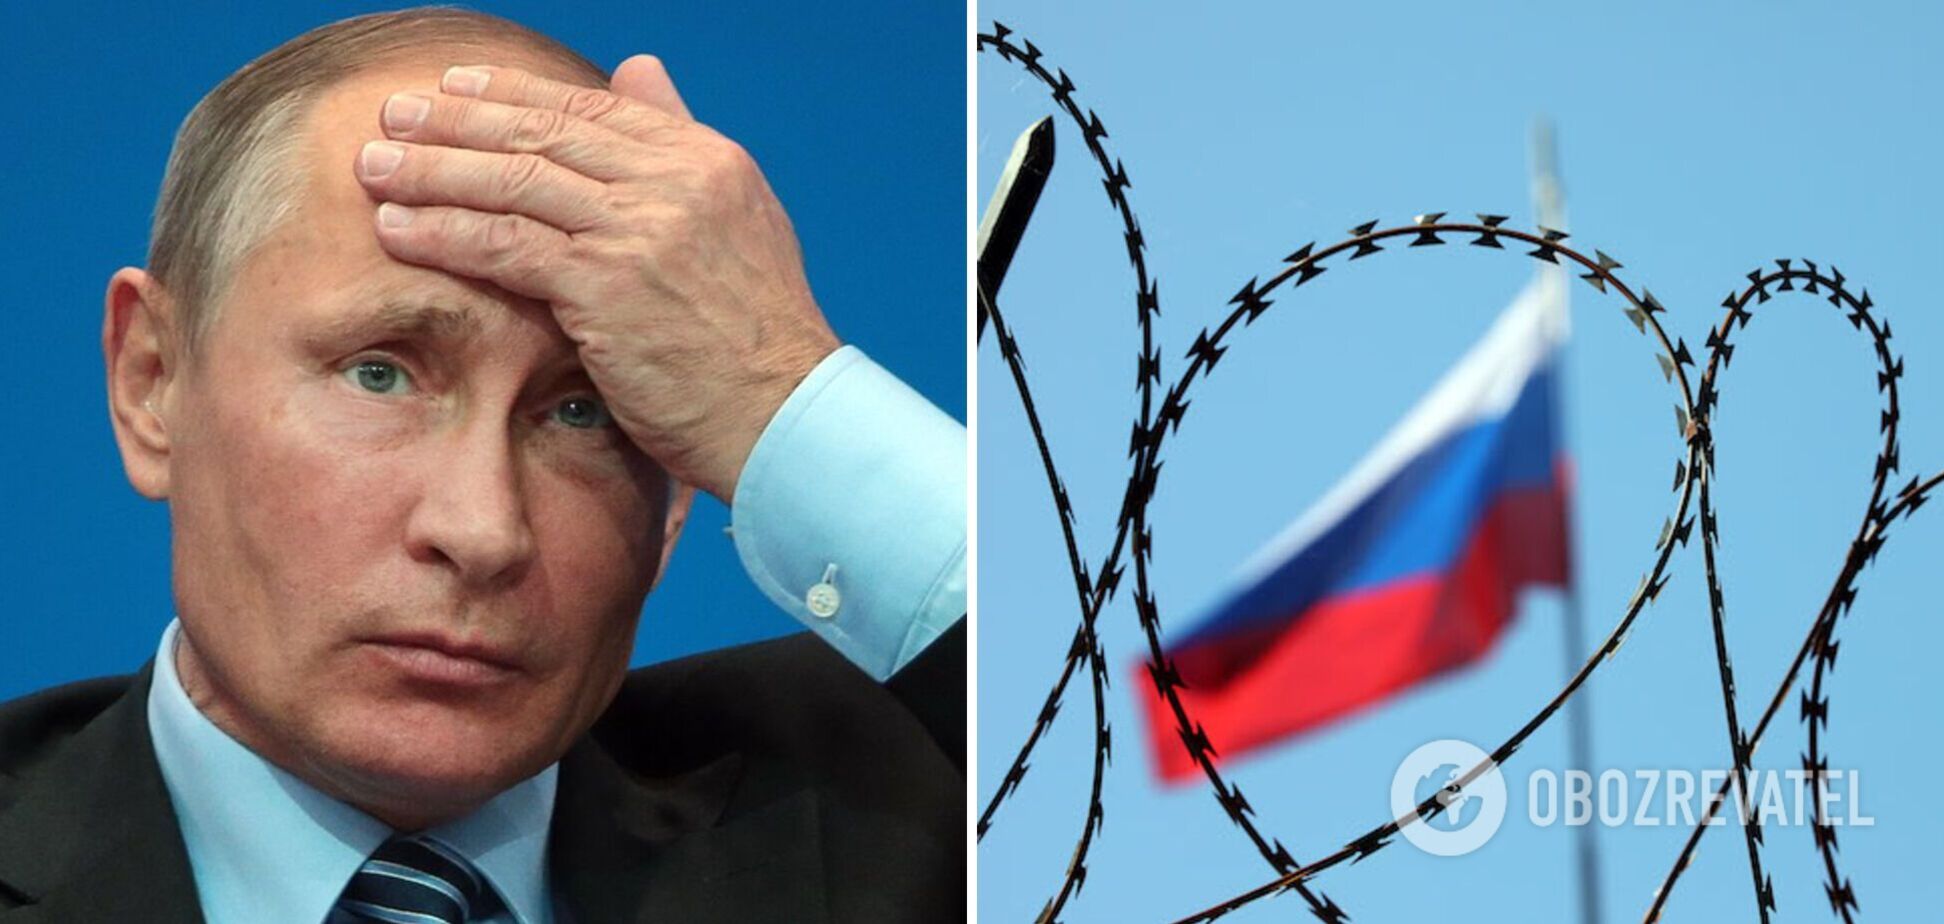 Уряд ПАР офіційно звернувся по ордер на арешт Путіна в разі його візиту до країни